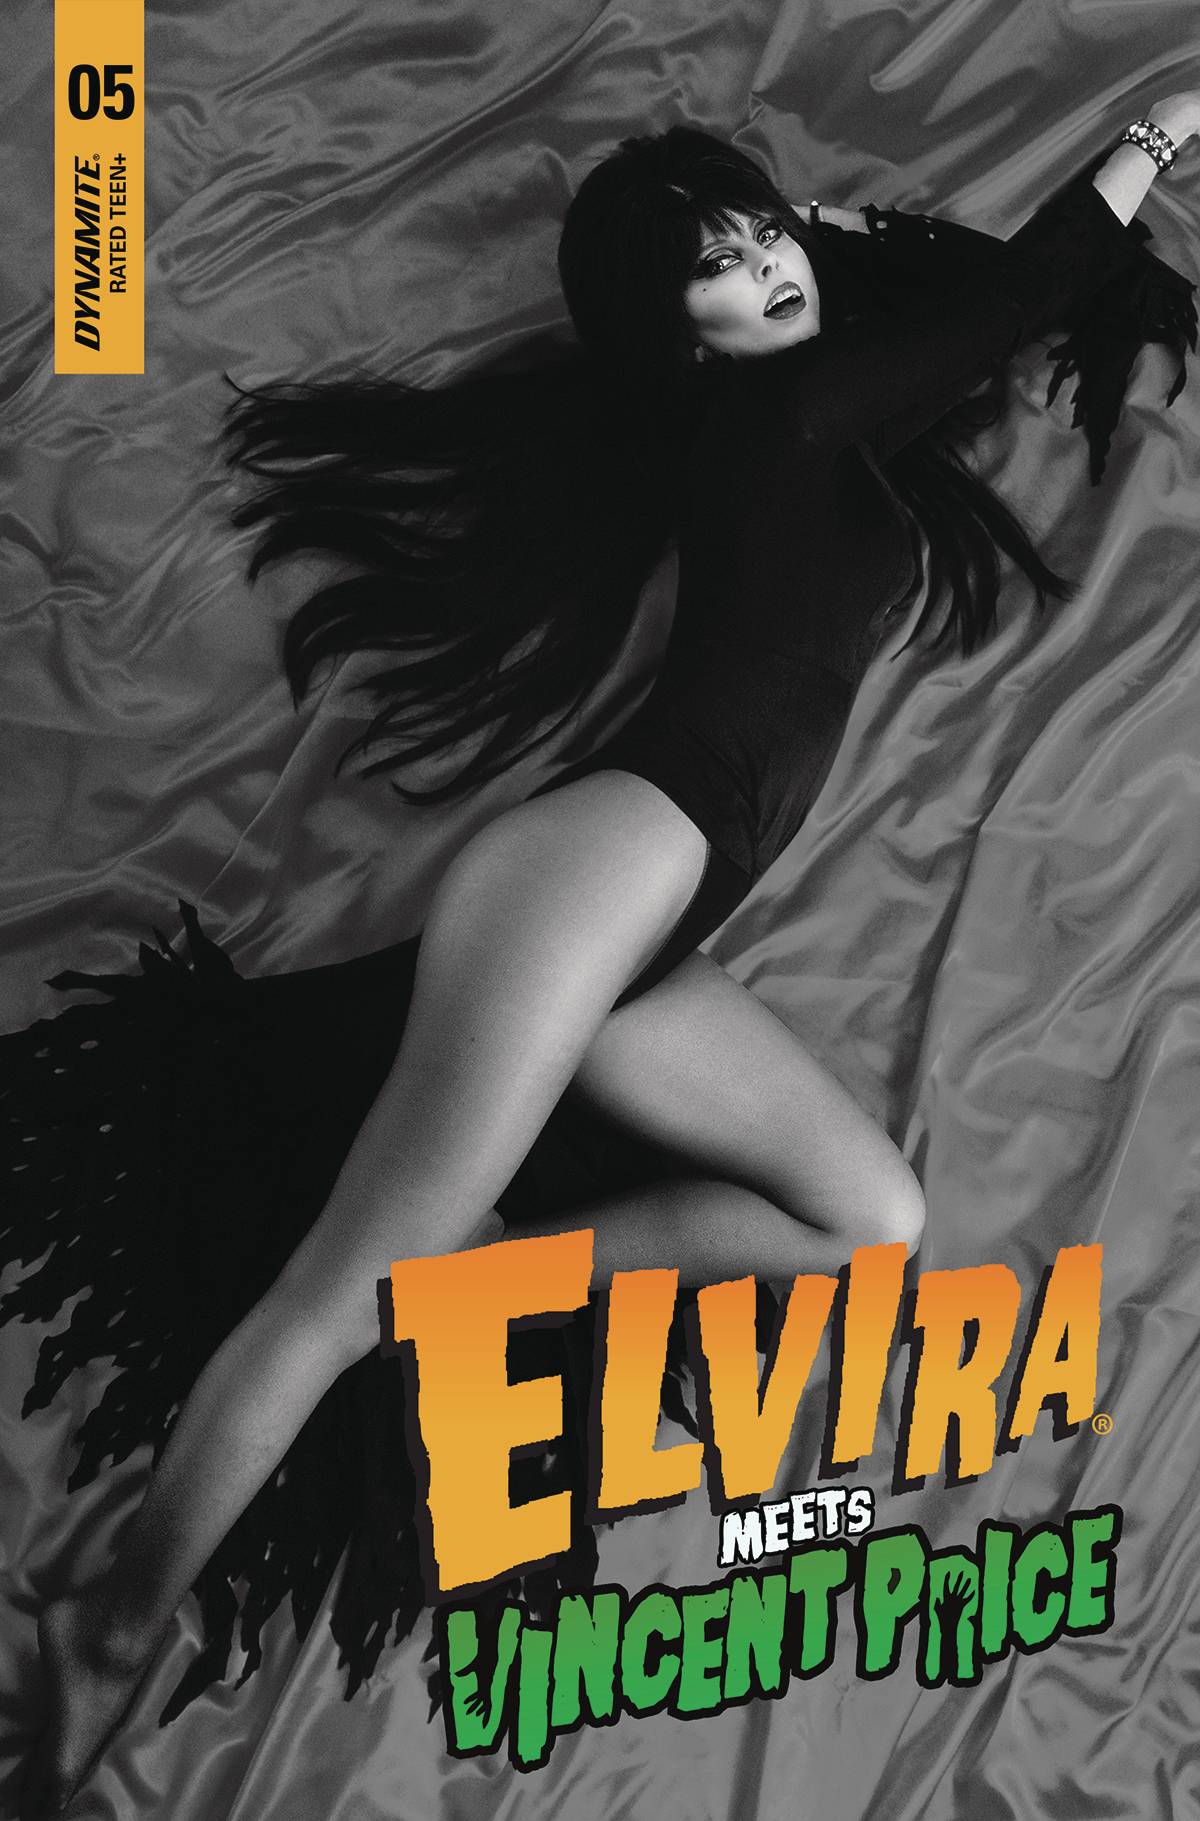 ELVIRA MEETS VINCENT PRICE #5 CVR E 10 COPY INCV PHOTO B&W